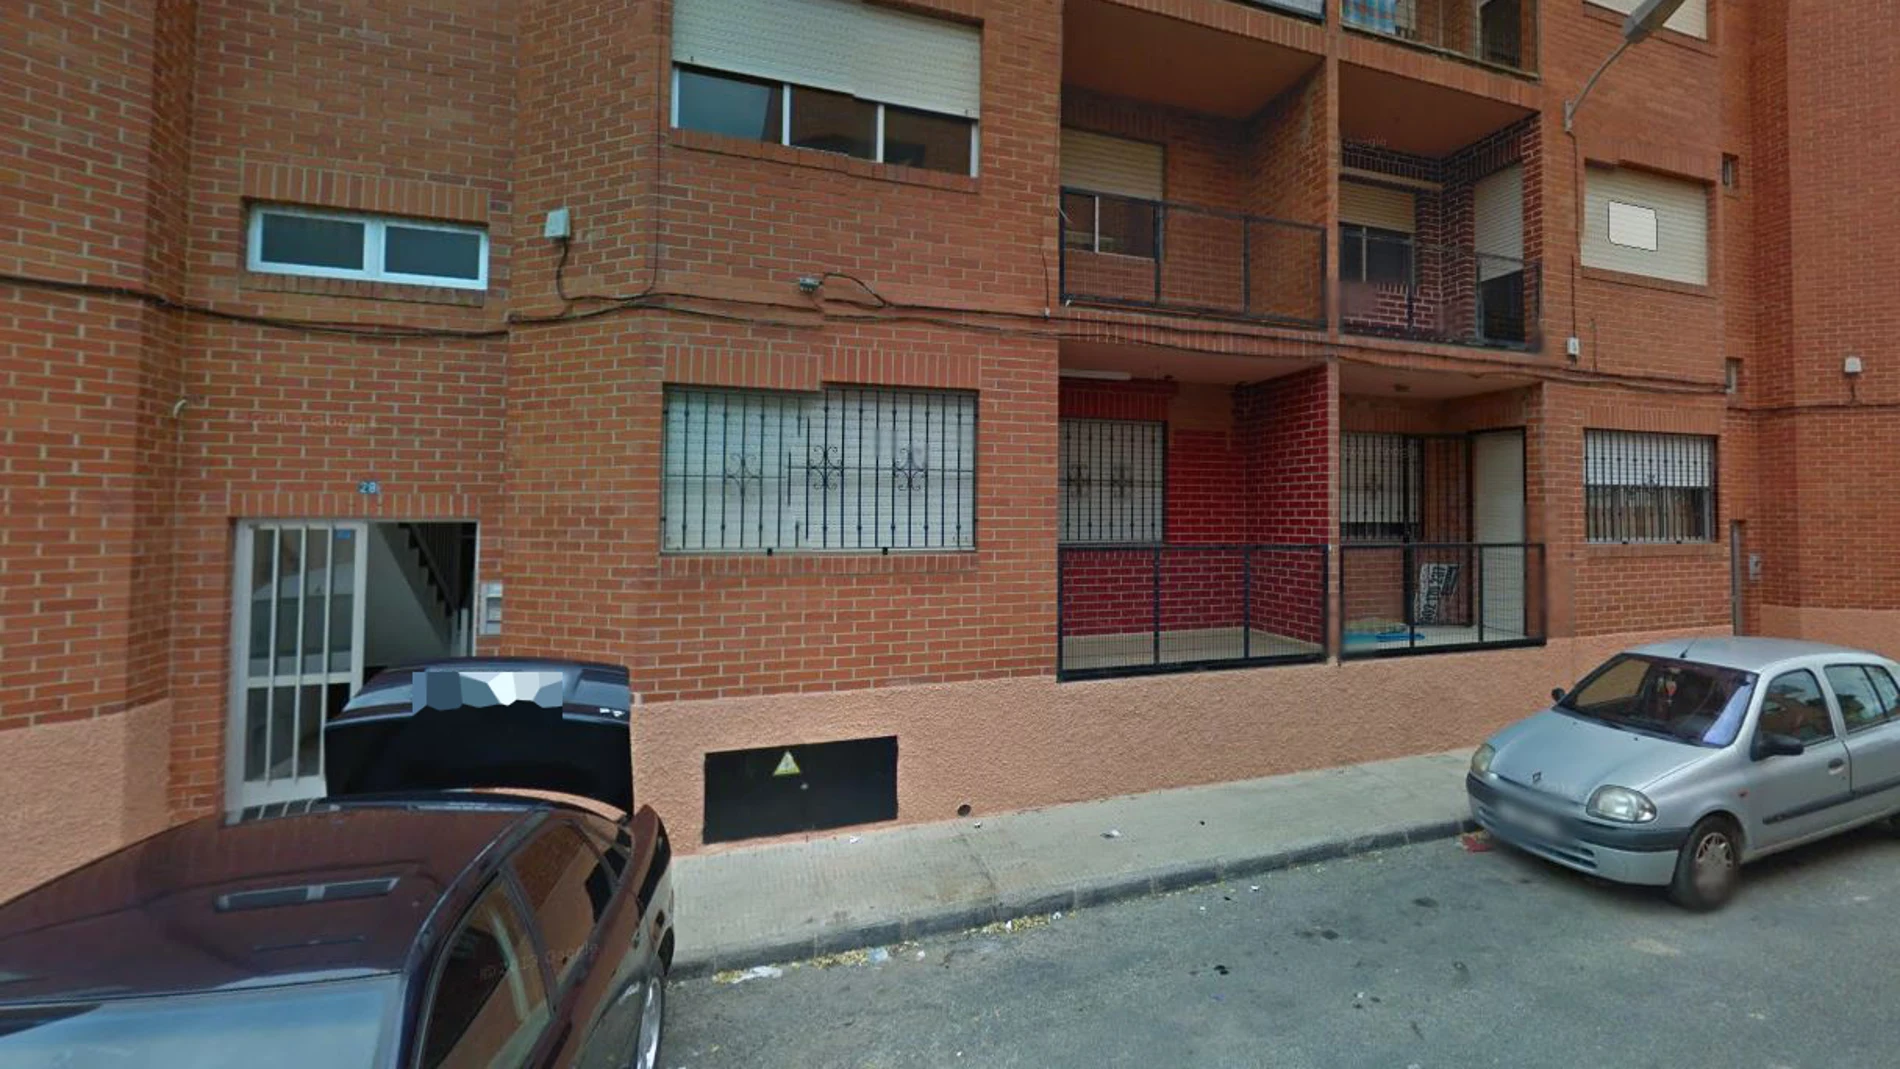 La recién nacida fue abandonada en la calle Las Cortes en San Javier, Murcia